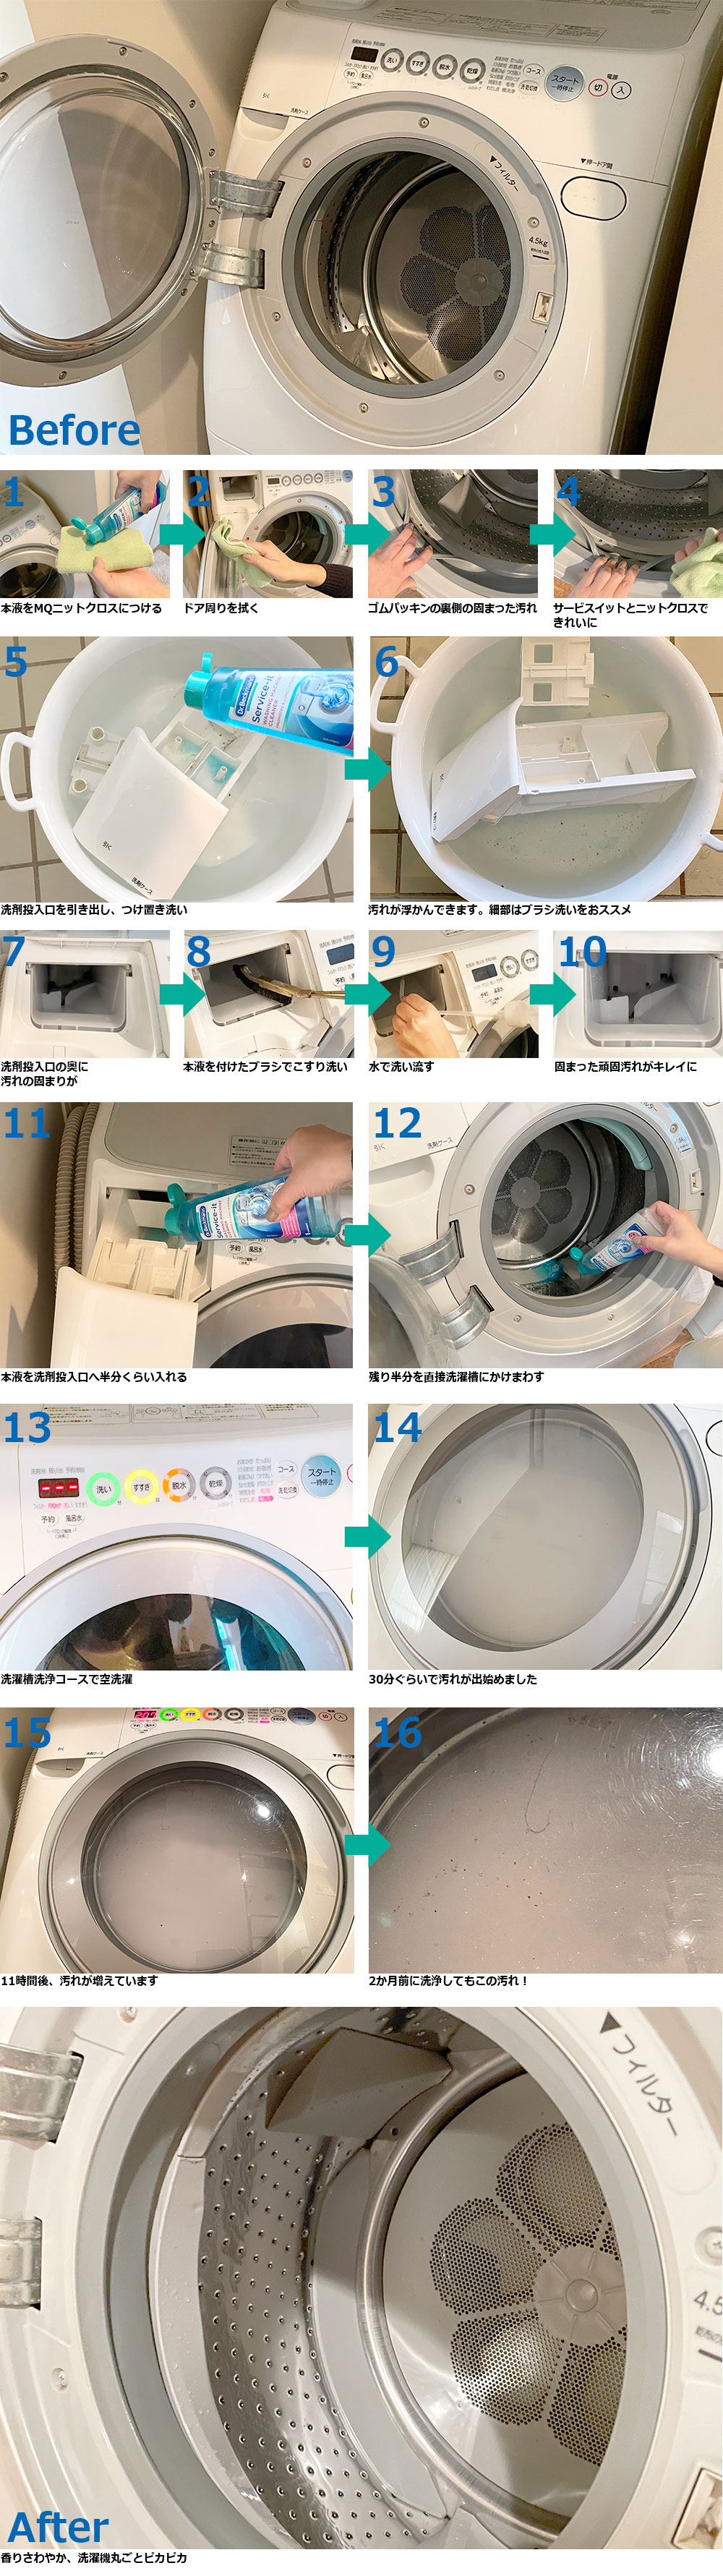 衣類をきれいに洗うコツは、洗濯機をきれいにすること